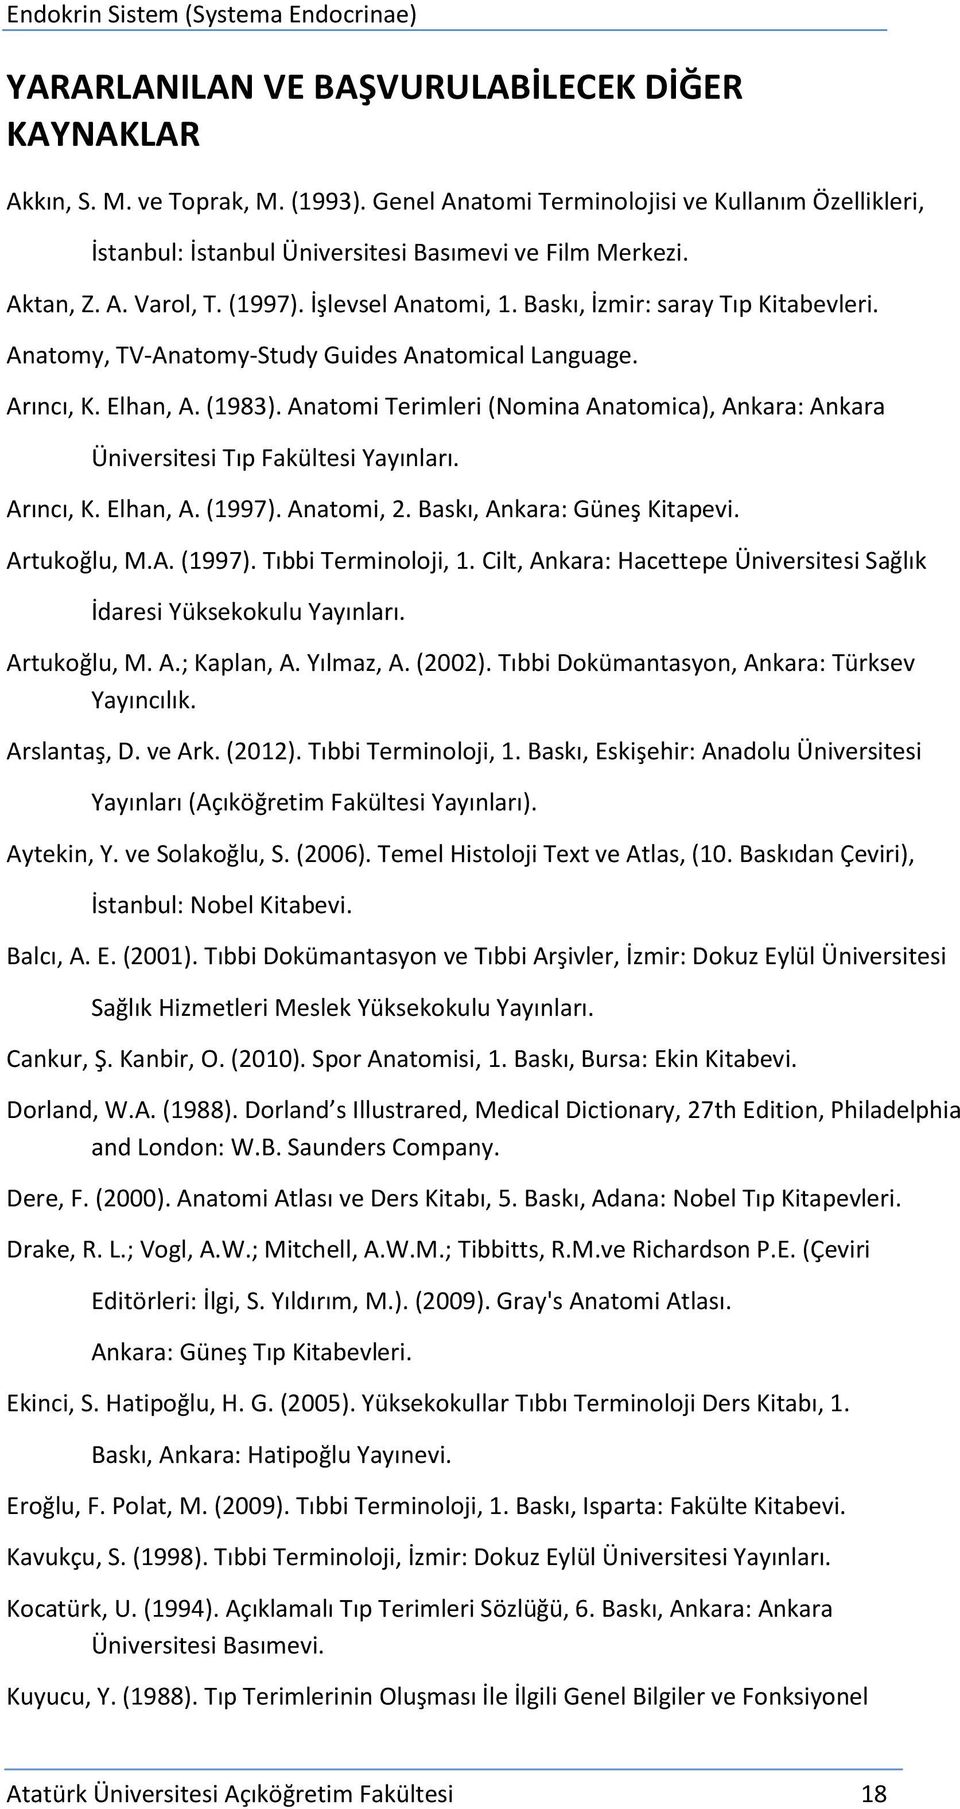 Anatomi Terimleri (Nomina Anatomica), Ankara: Ankara Üniversitesi Tıp Fakültesi Yayınları. Arıncı, K. Elhan, A. (1997). Anatomi, 2. Baskı, Ankara: Güneş Kitapevi. Artukoğlu, M.A. (1997). Tıbbi Terminoloji, 1.